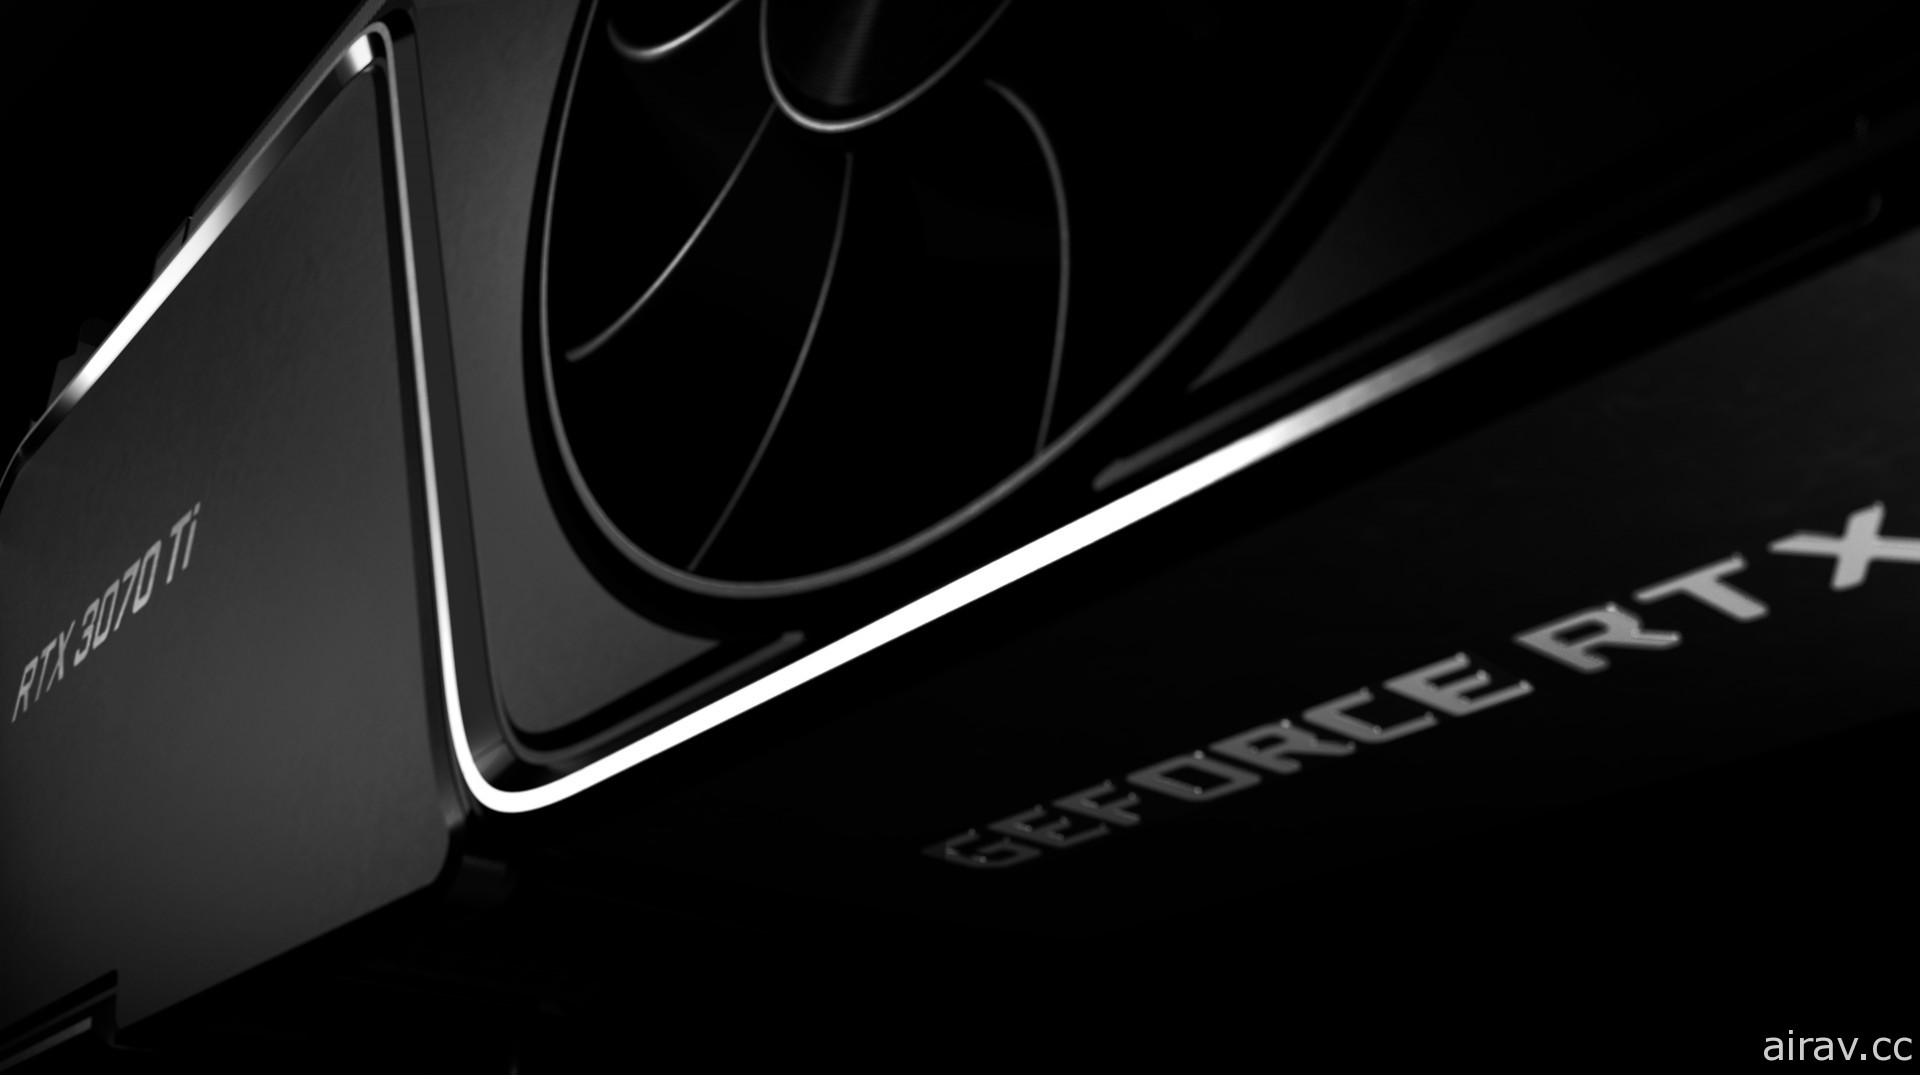 NVIDIA 發表 RTX 30 系列新顯卡「GeForce RTX 3080 Ti」與「RTX 3070 Ti」